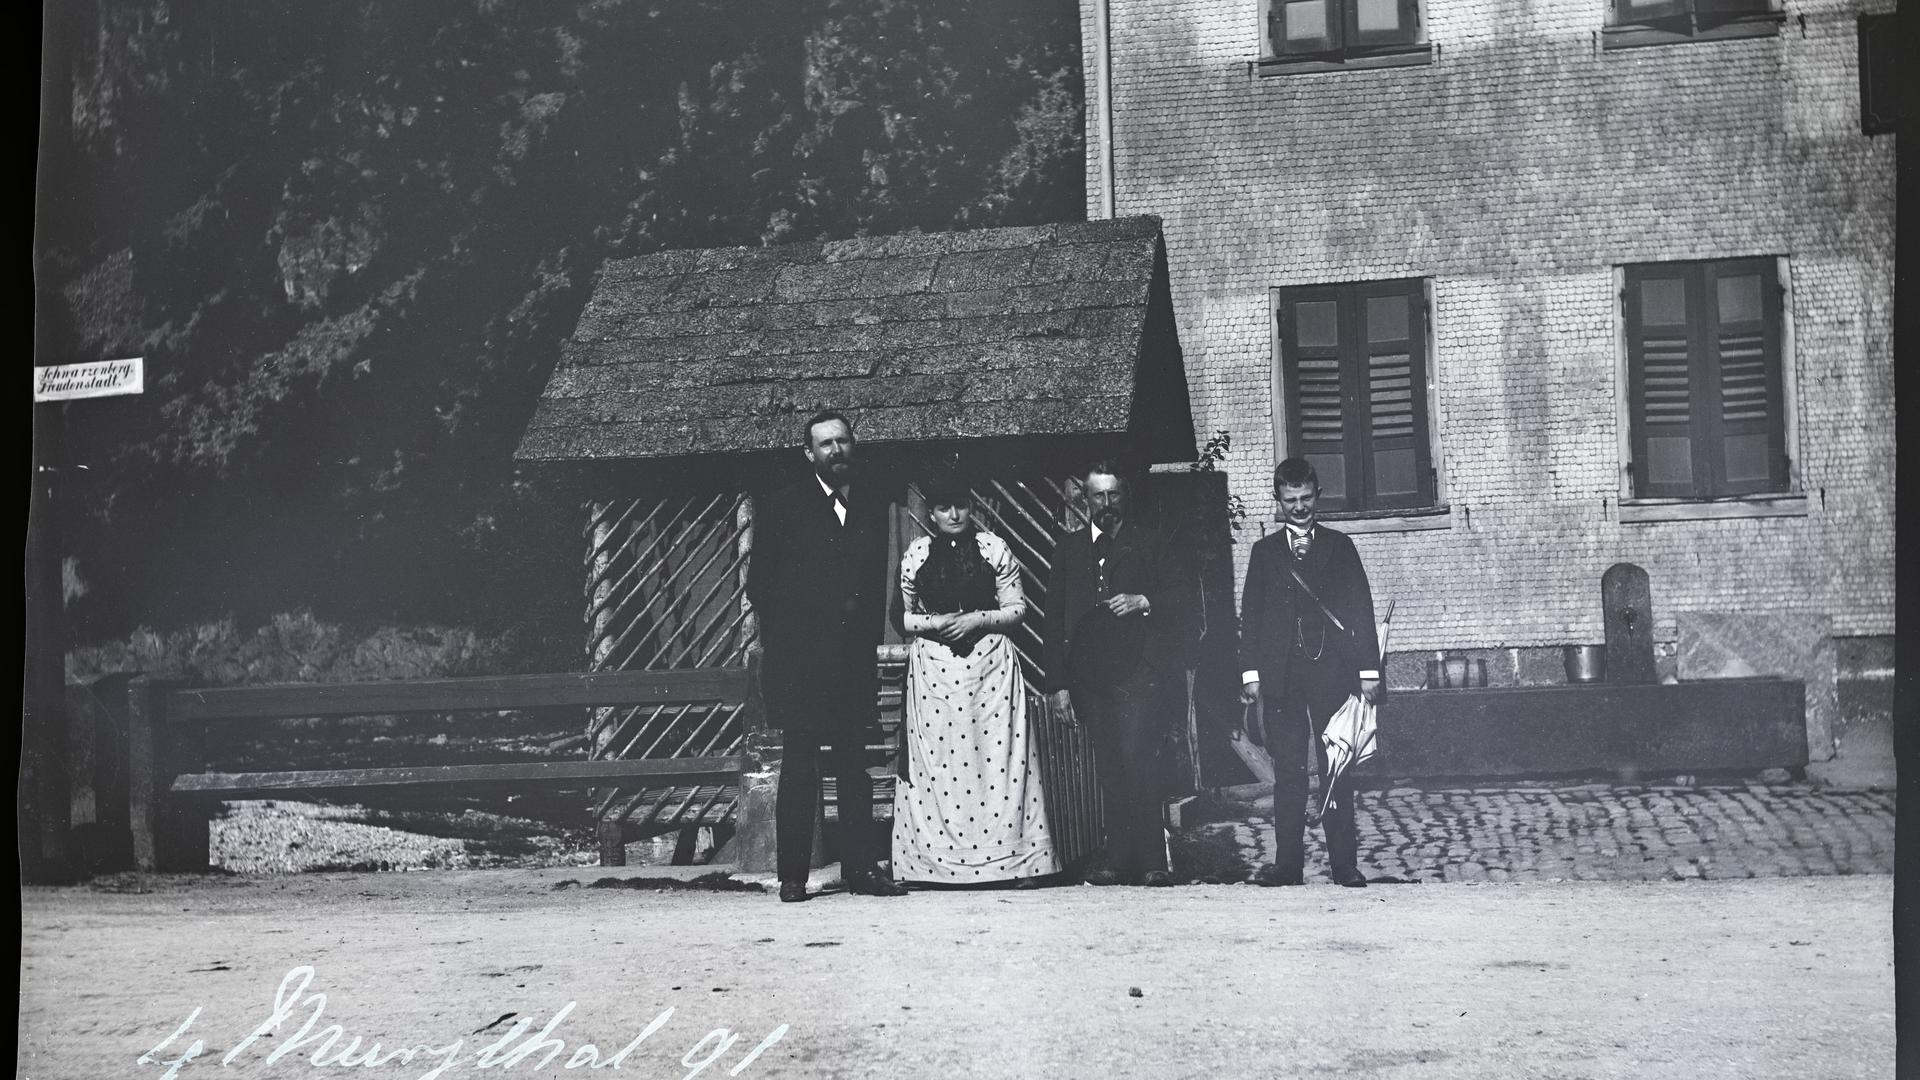 historische Aufnahme aus dem Murgtal, vier Personen, zwei Männer, eine Frau, ein Jugendlicher, stehen vor einem zweigeschossigen Gebäude auf der Schotterstraße